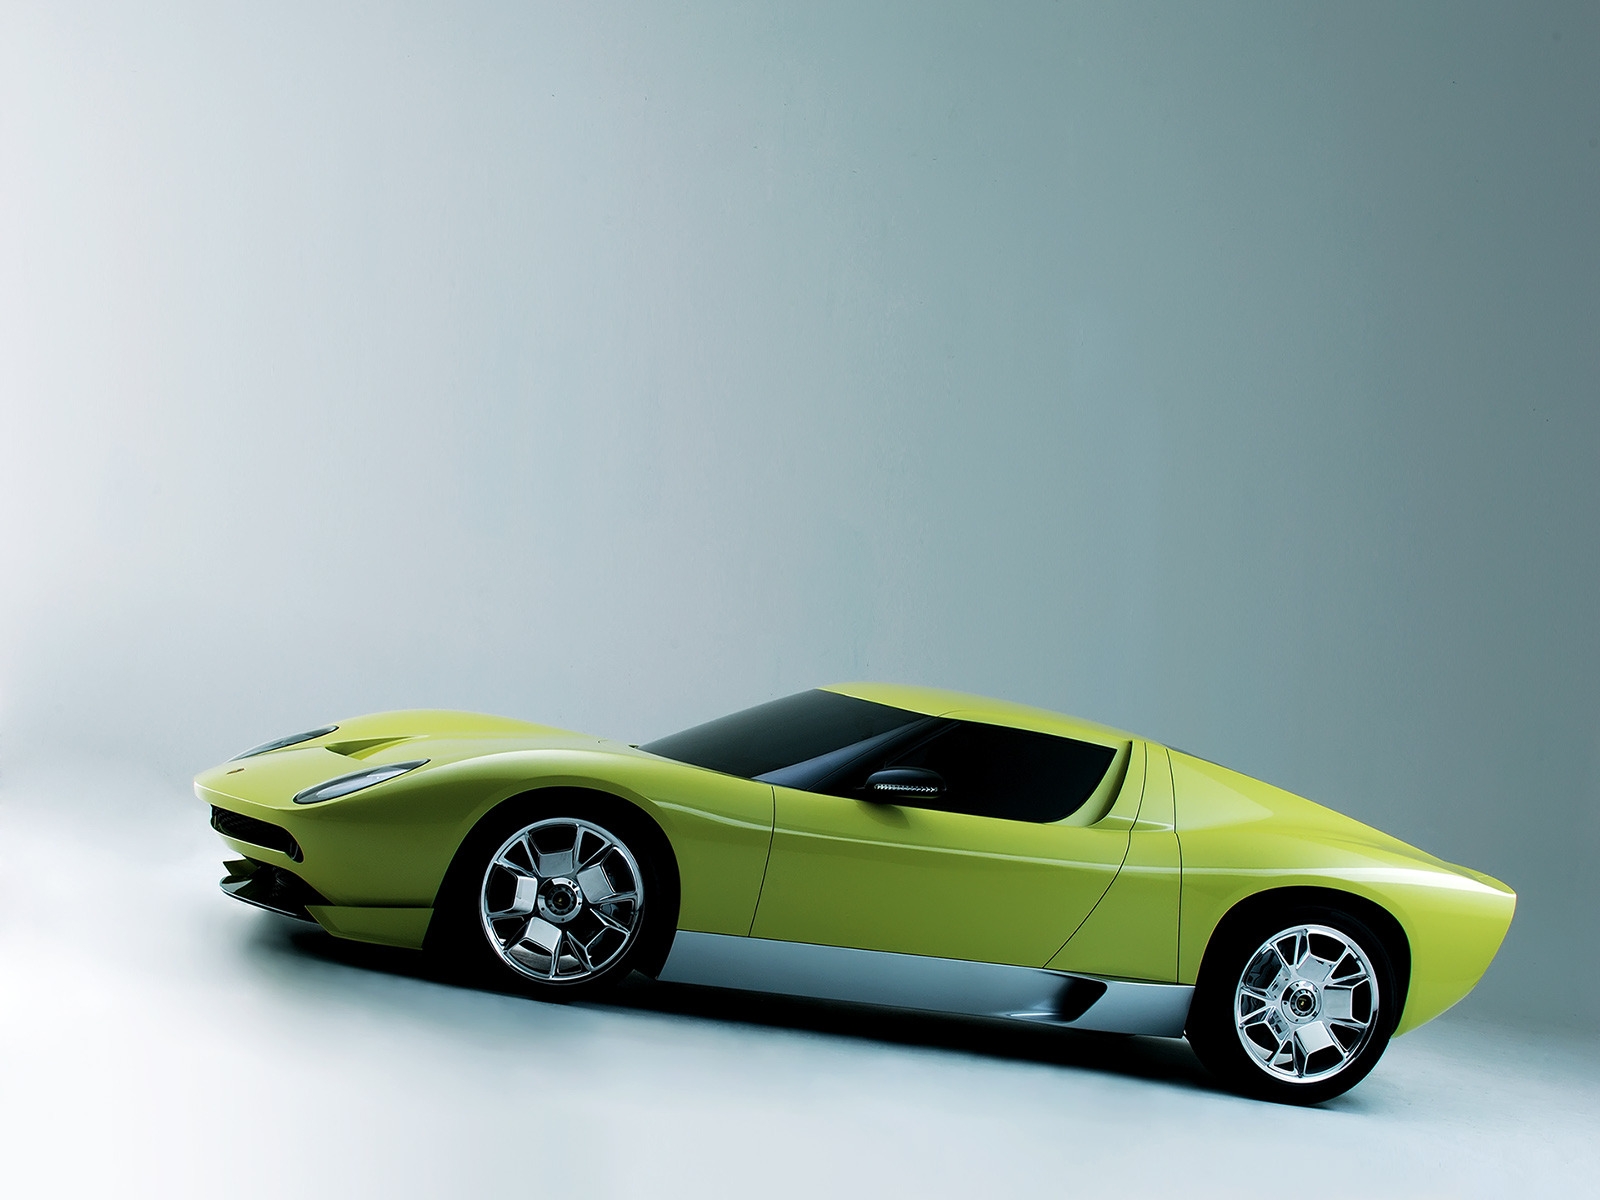 Lamborghini Miura Concept Side for 1600 x 1200 resolution